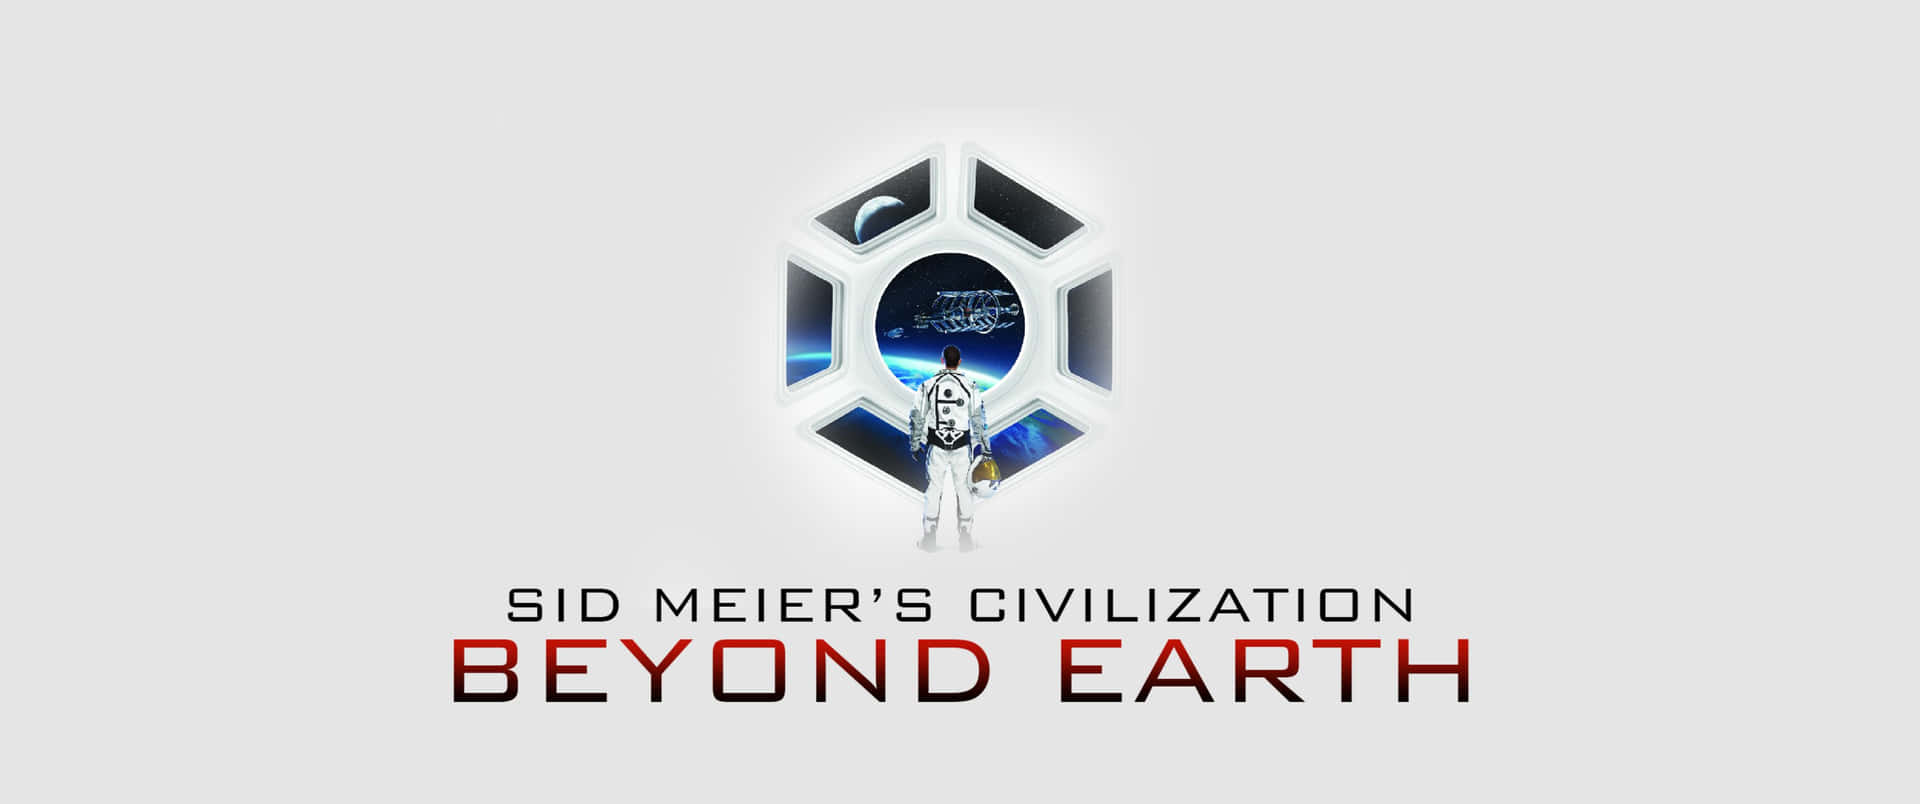 Affascinantesfondo Schermo 3440x1440p Della Scena Di Gioco Di Civilization: Beyond Earth.